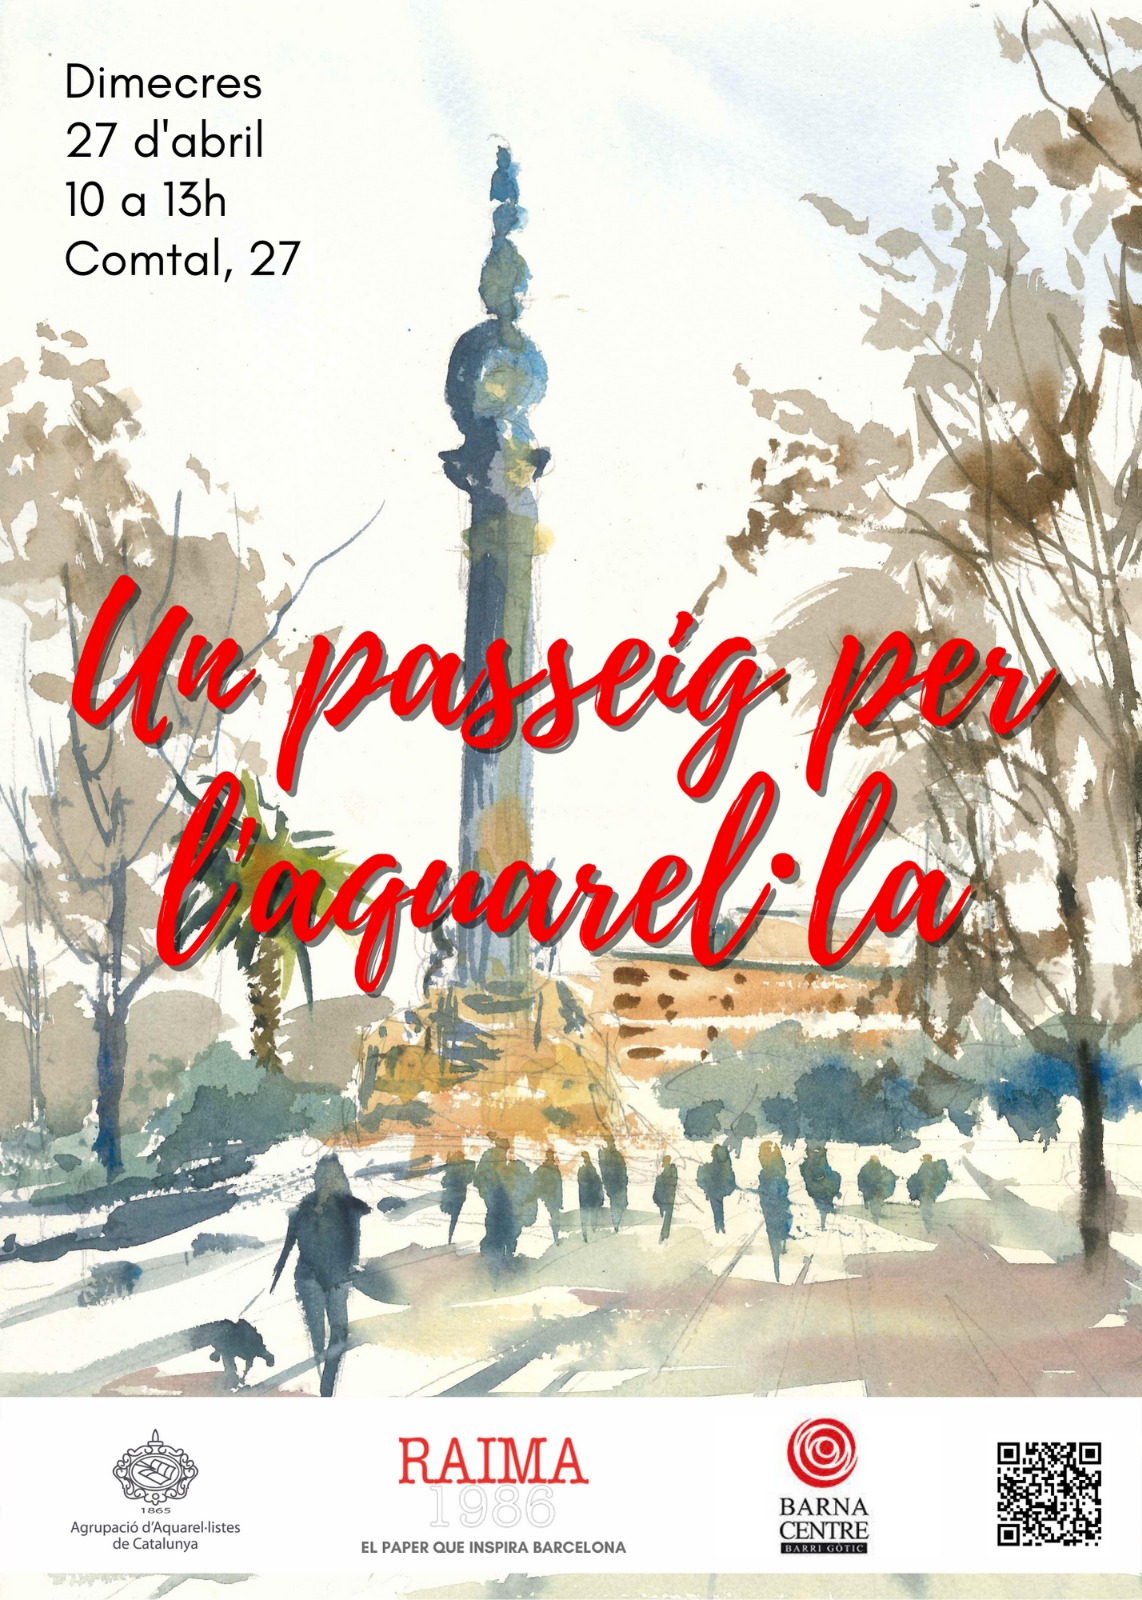 El fons del cartell és una aquarel·la de Colon, de l'artista J. Antonio Espinosa. El seu títol és: Un passeig per l'aquarel·la. El lloc és al carrer Comtal 27 de Barcelona, de 10:00h a 13:00h.